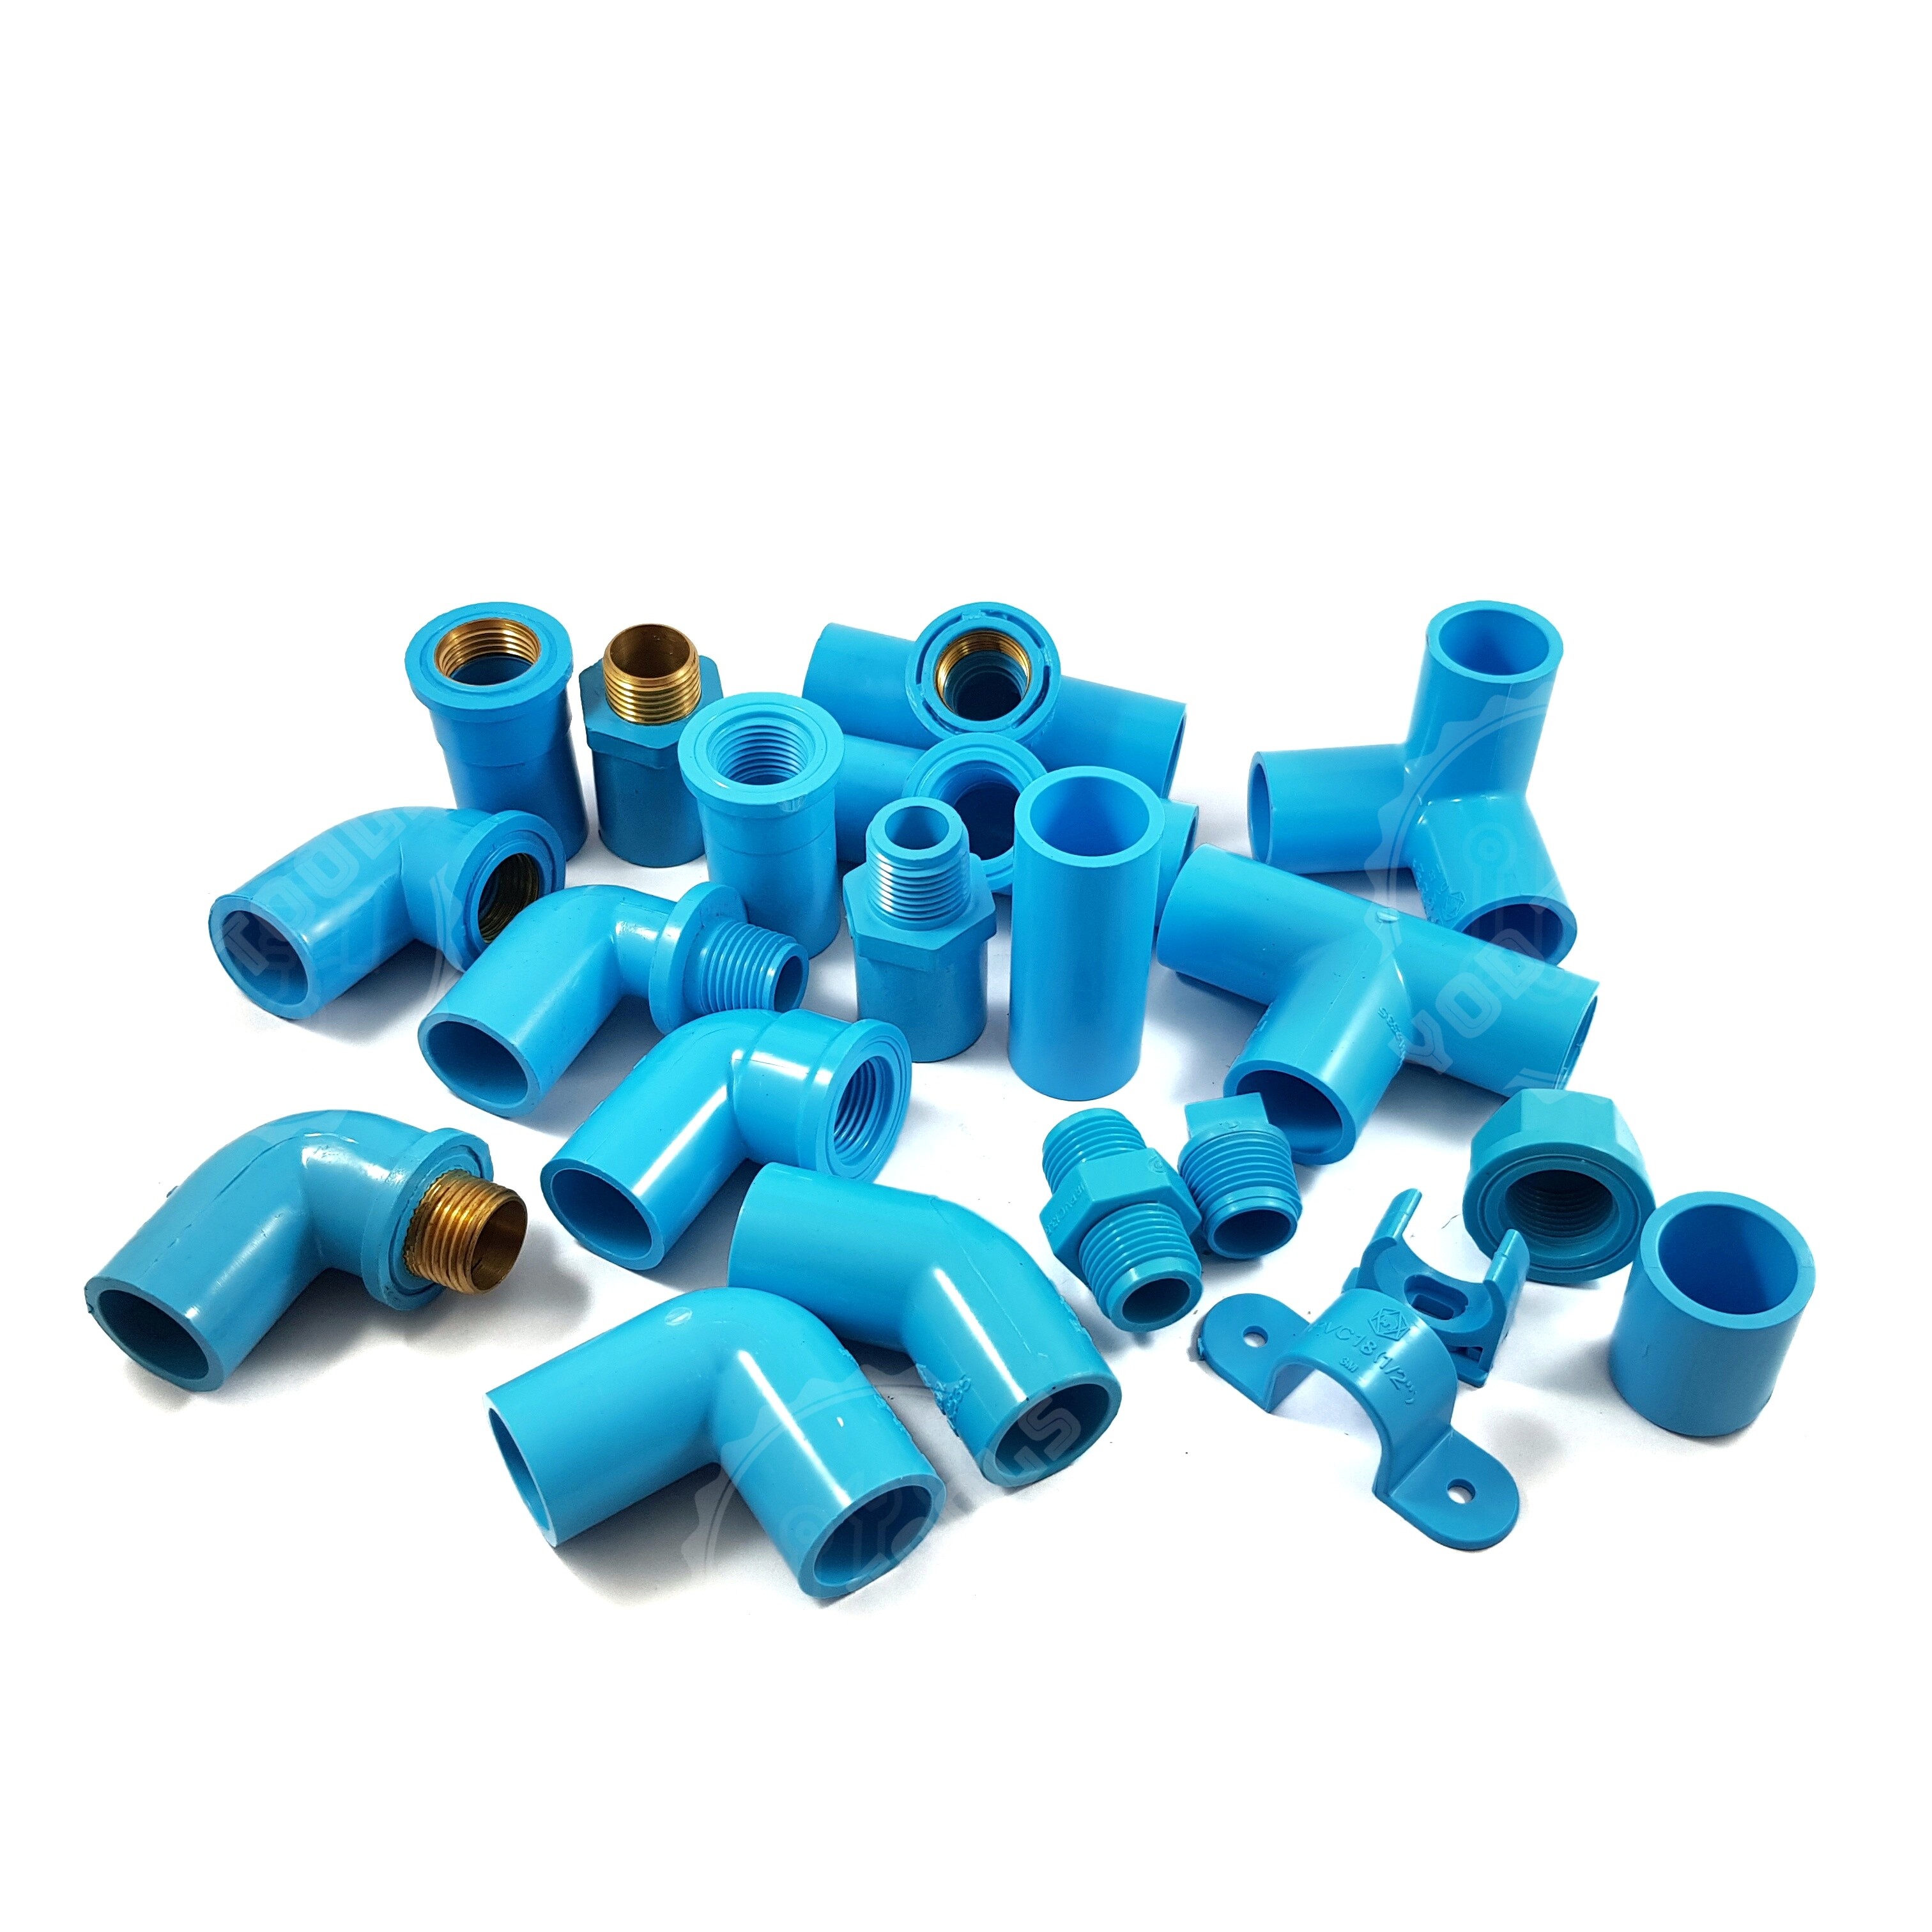 ข้อต่อ ประปา PVC ข้อต่อพีวีซี SCG ตราช้าง (ยกเว้นเกลียวทองเหลือง)  สีฟ้า ขนาดท่อ 4 หุน (1/2 นิ้ว)